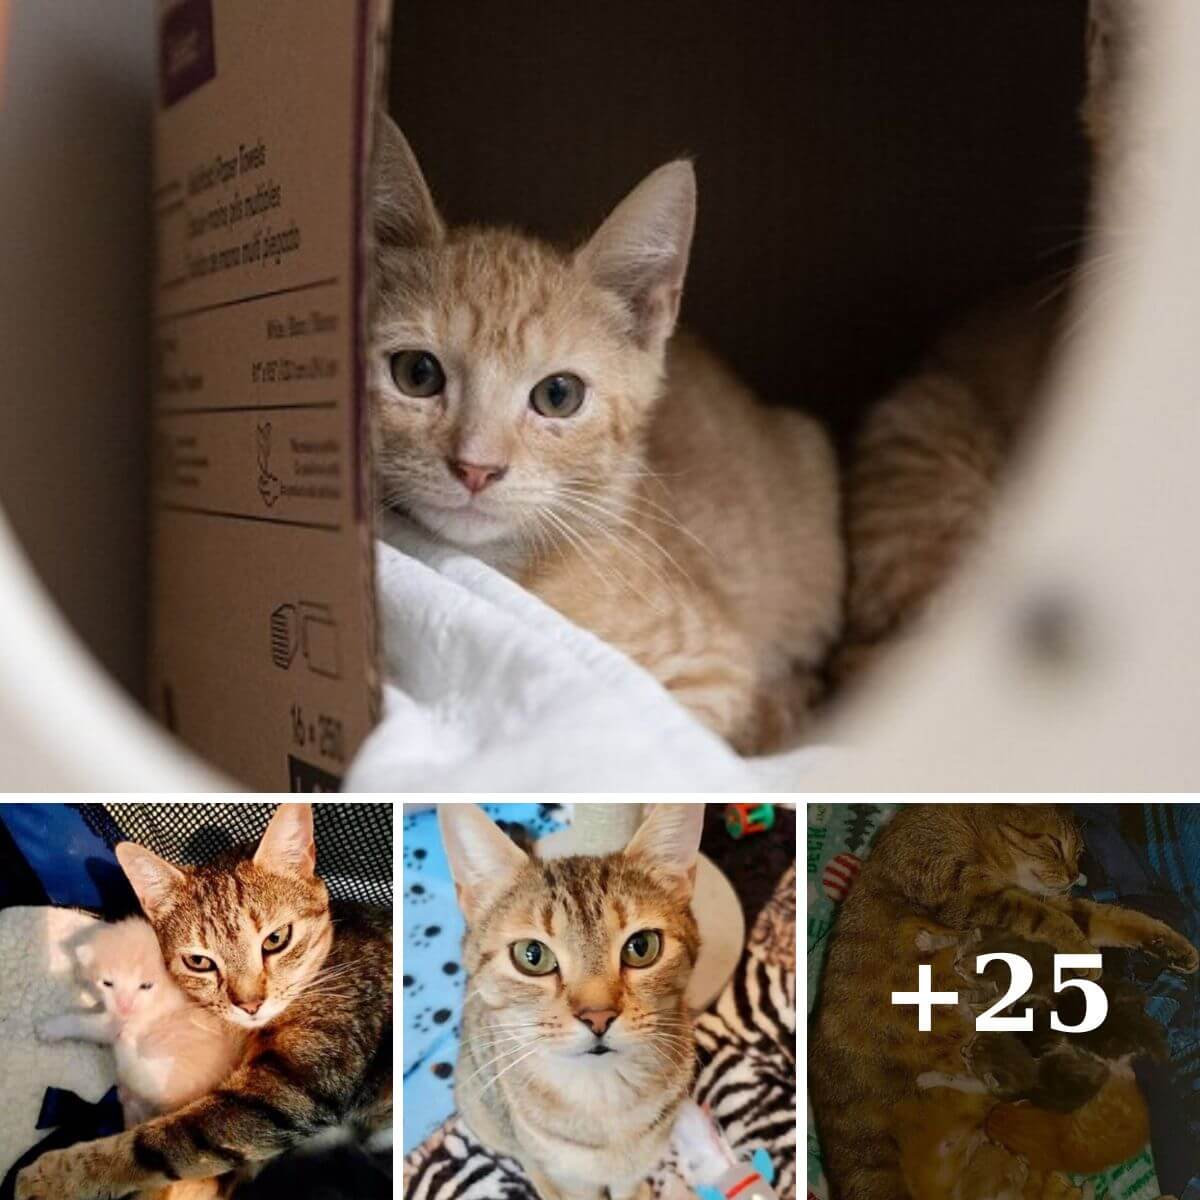 A Heartwarming Tale: The Kitten's Journey Home